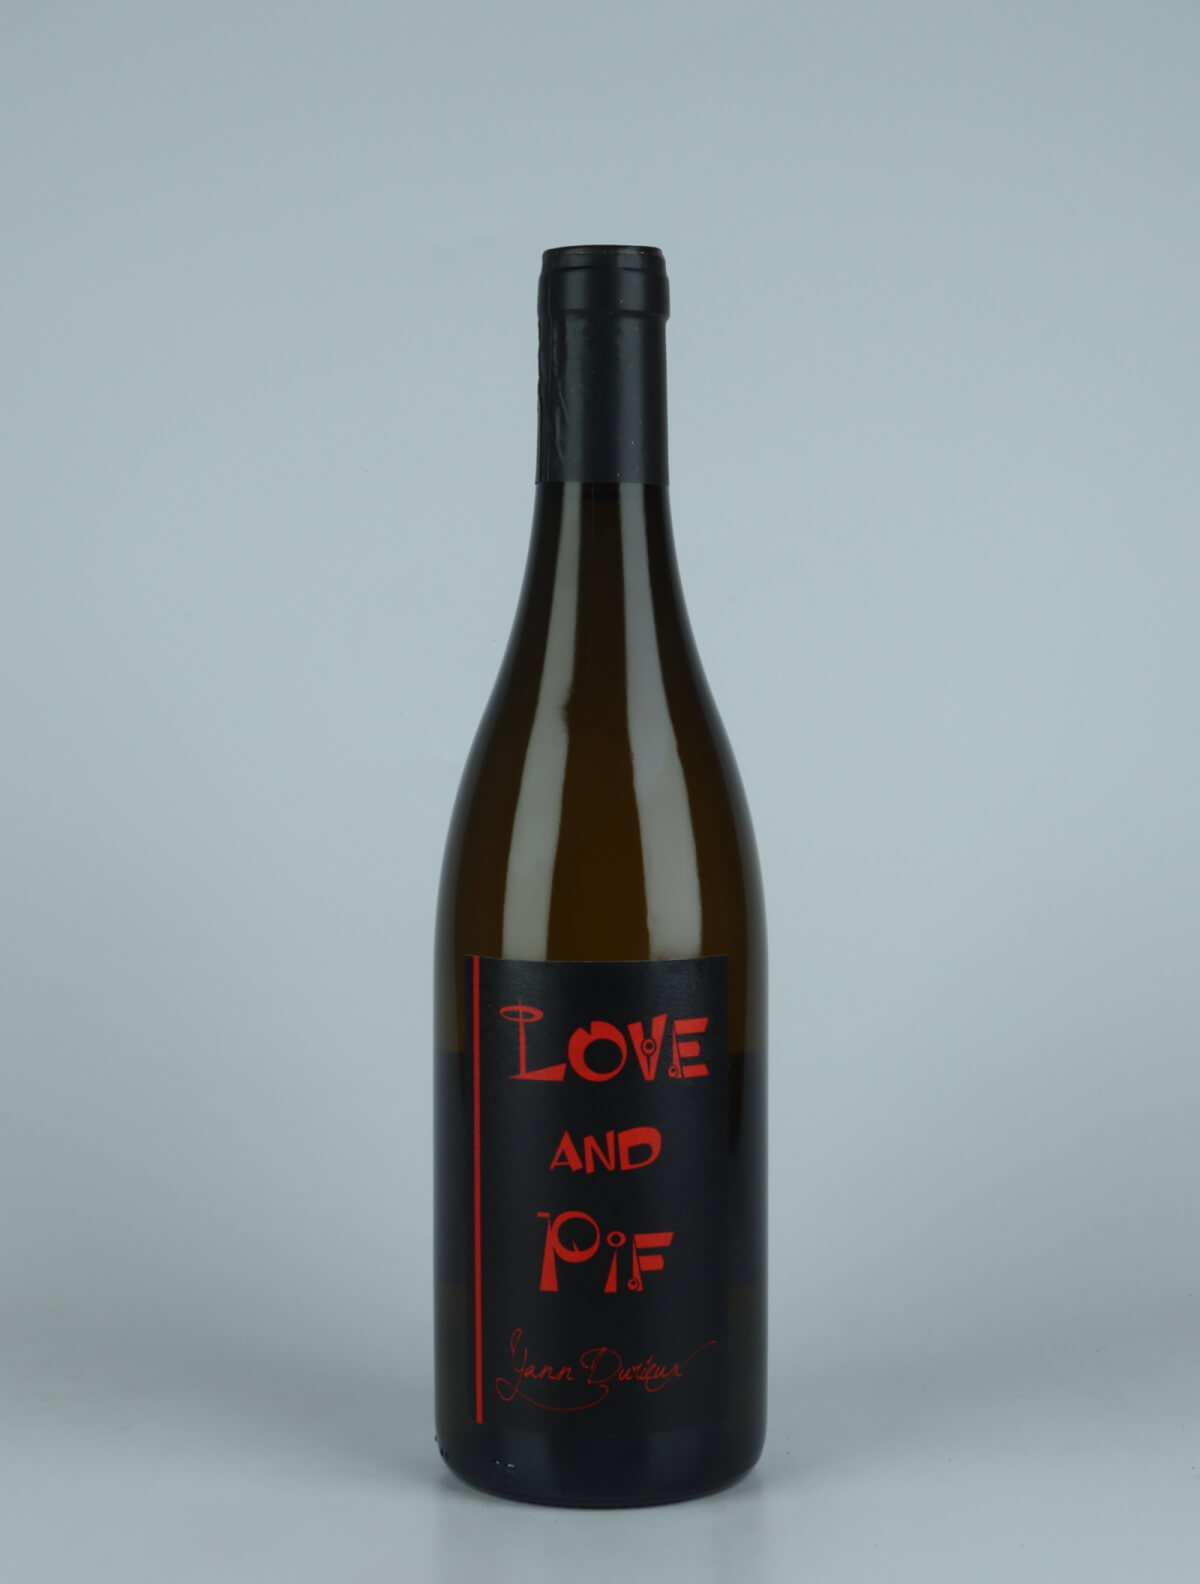 En flaske 2021 Aligoté - Love and Pif Hvidvin fra Yann Durieux, Bourgogne i Frankrig